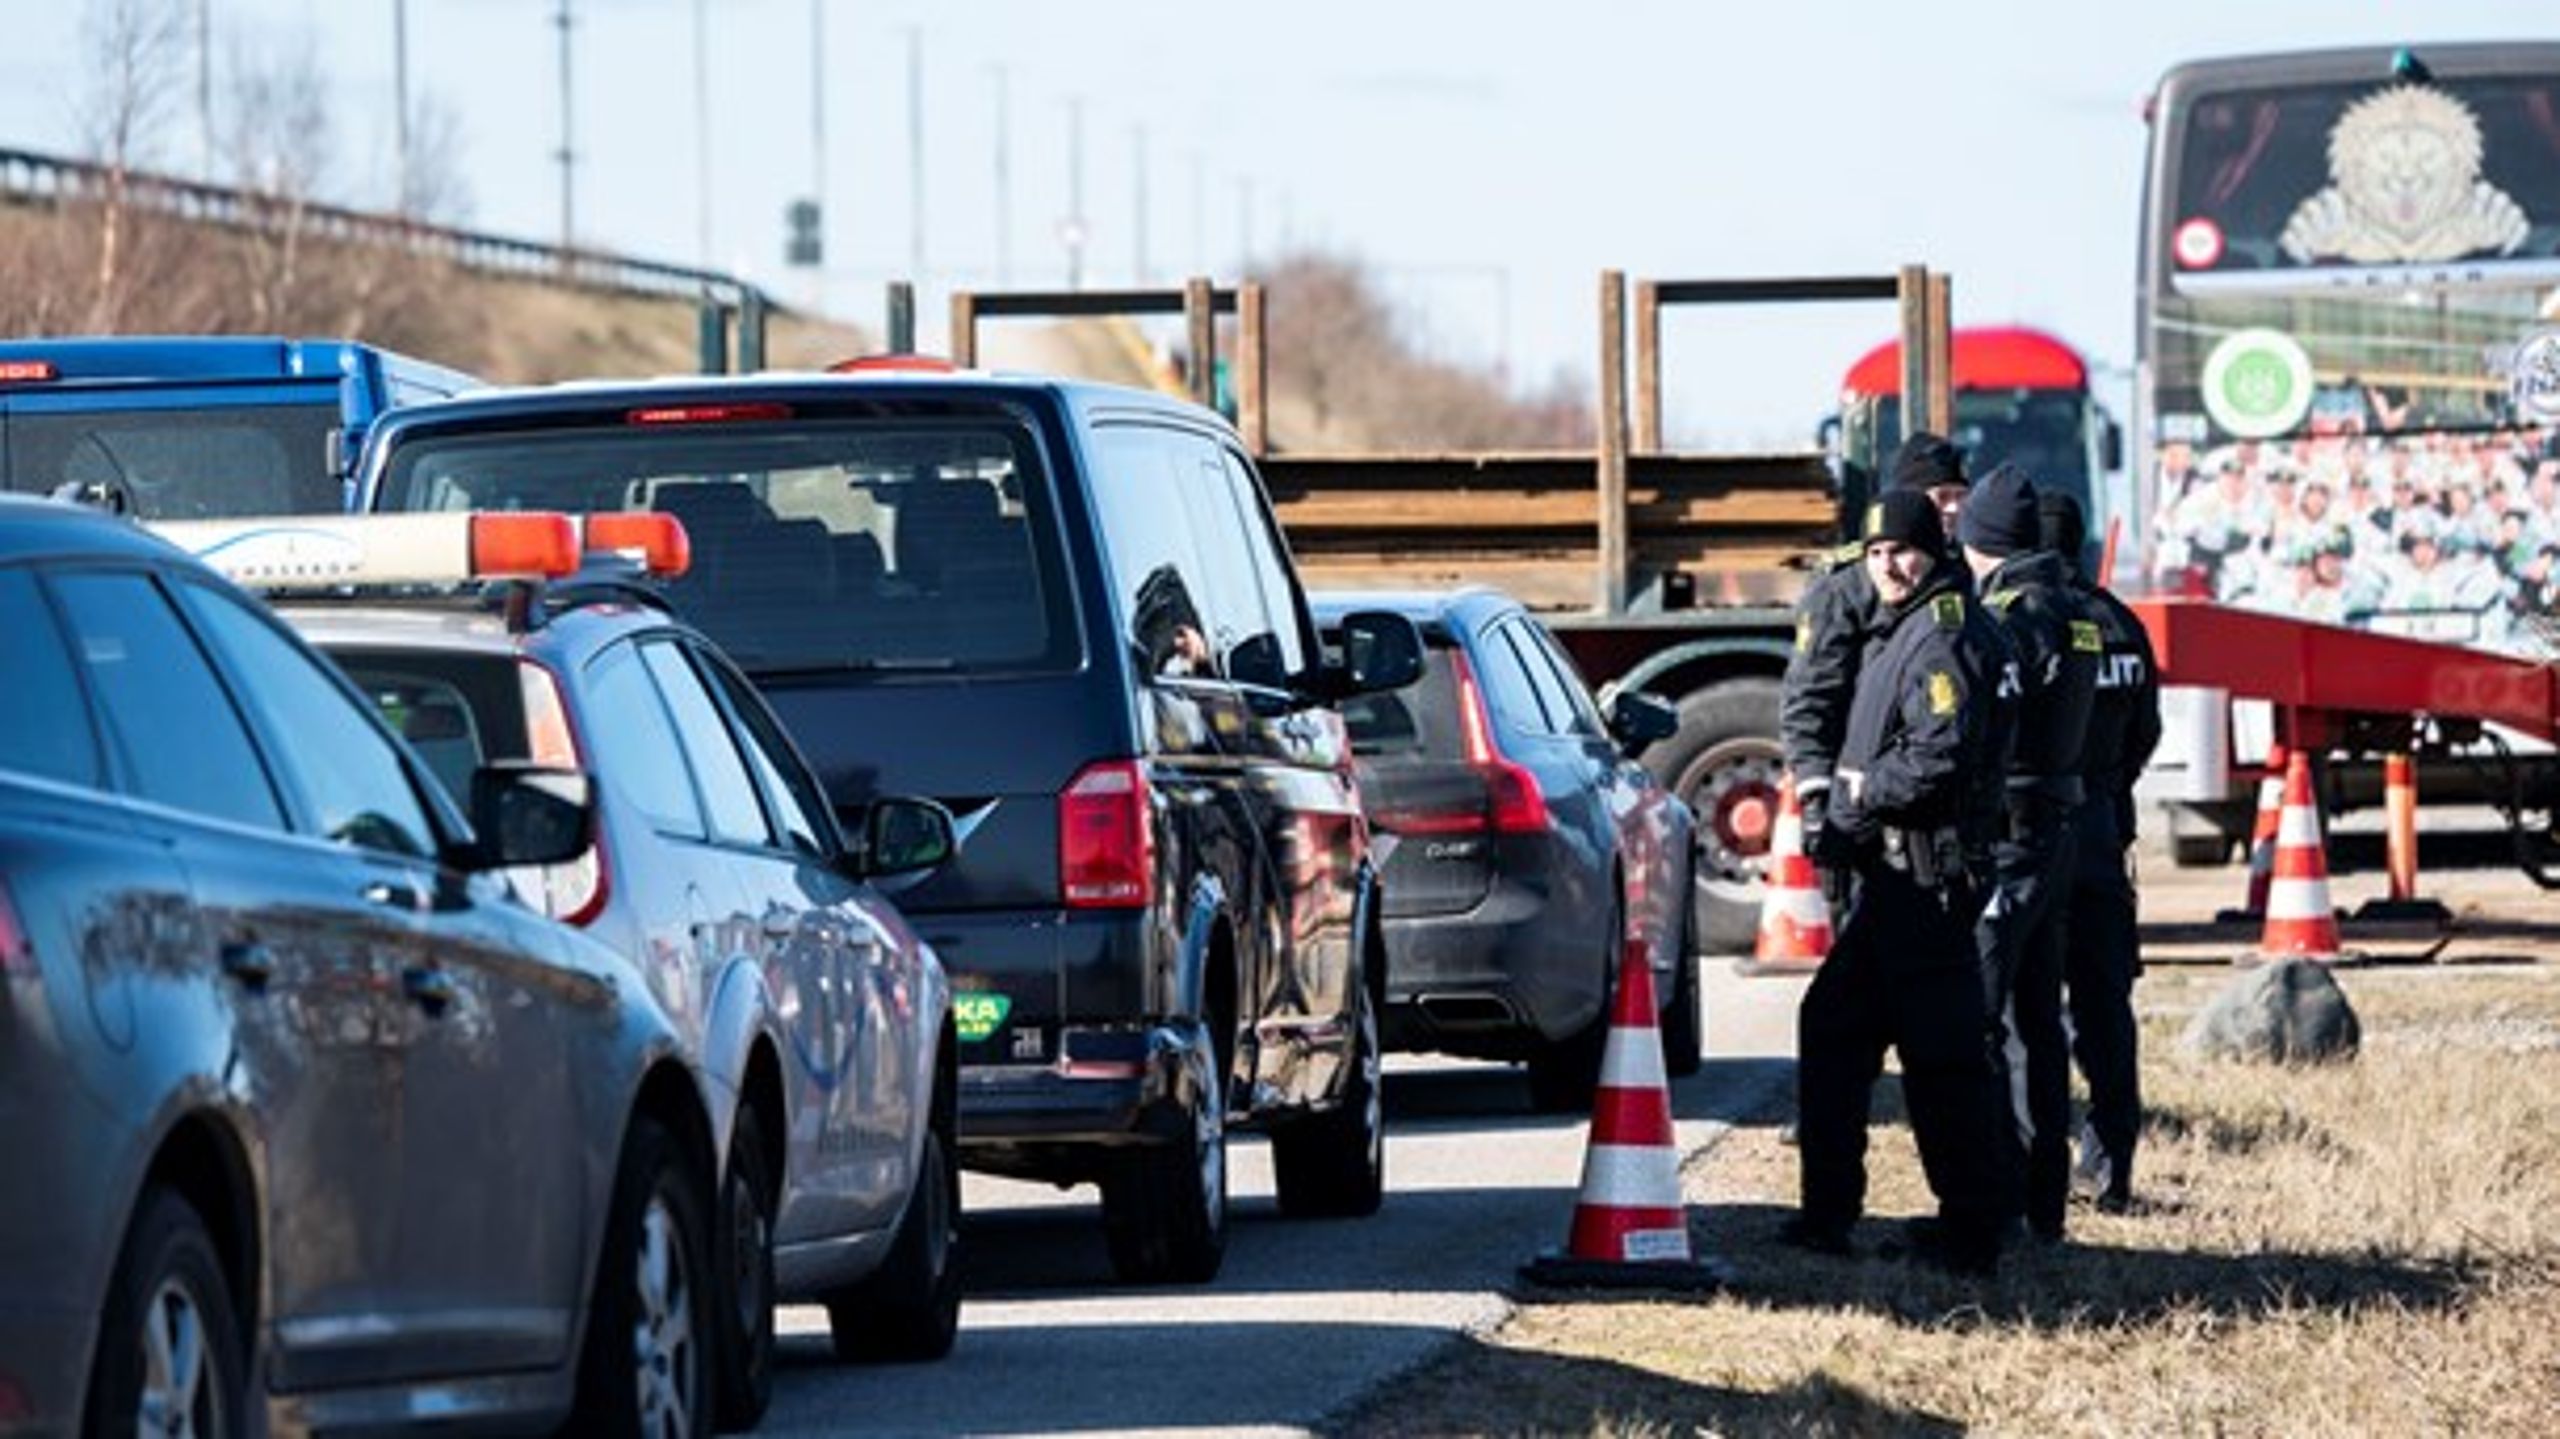 Der har som minimum været stikprøvekontrol ved Danmarks grænser siden januar 2016, da daværende statsminister Lars Løkke Rasmussen (V) indførte det i flygtningekrisen.